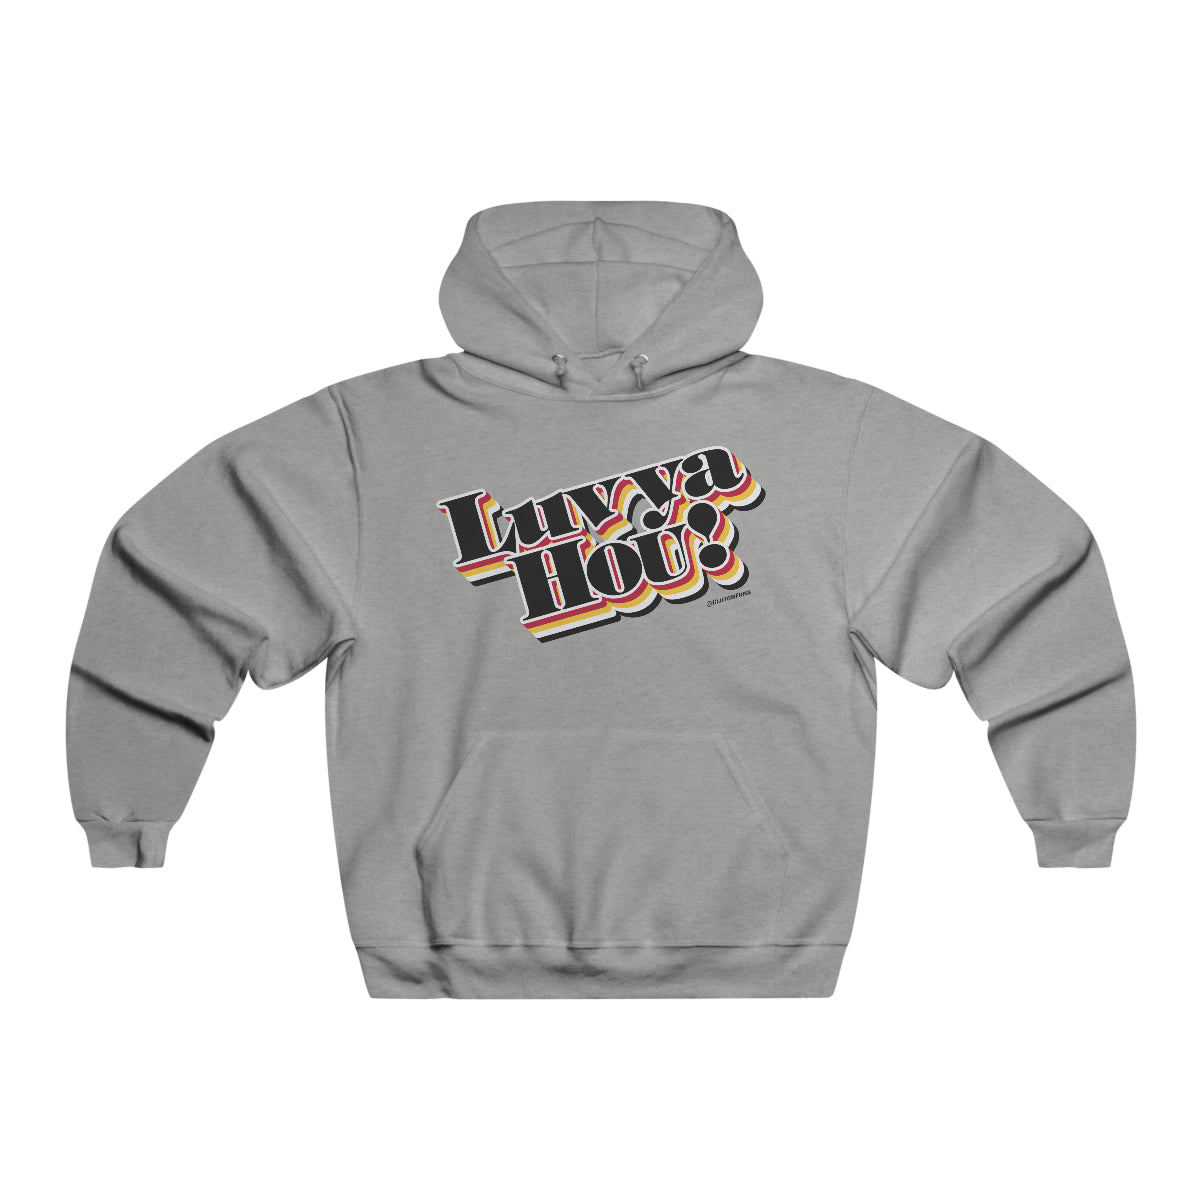 Luv Ya Hou! (Basketball) - Hooded Sweatshirt